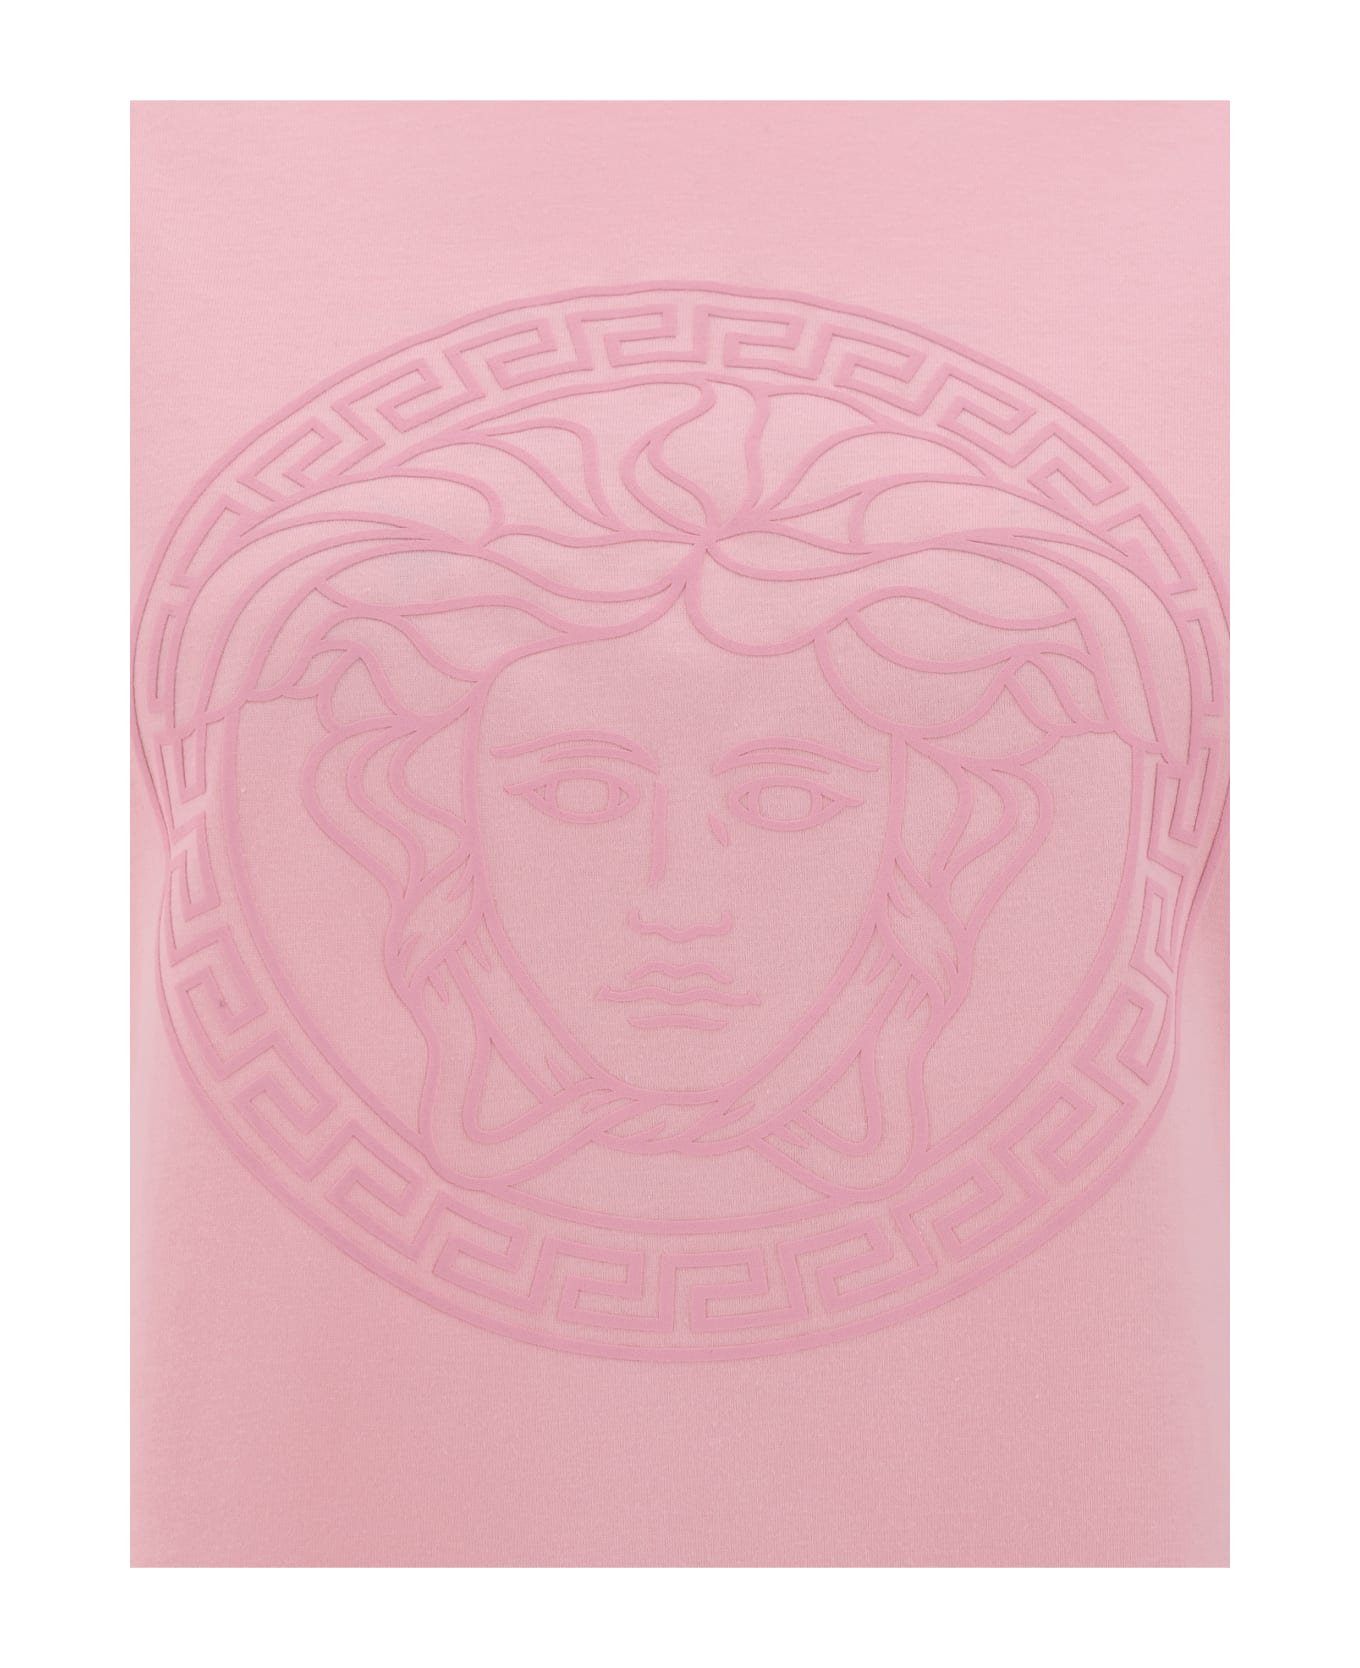 Versace 'medusa' T-shirt - Pale Pink